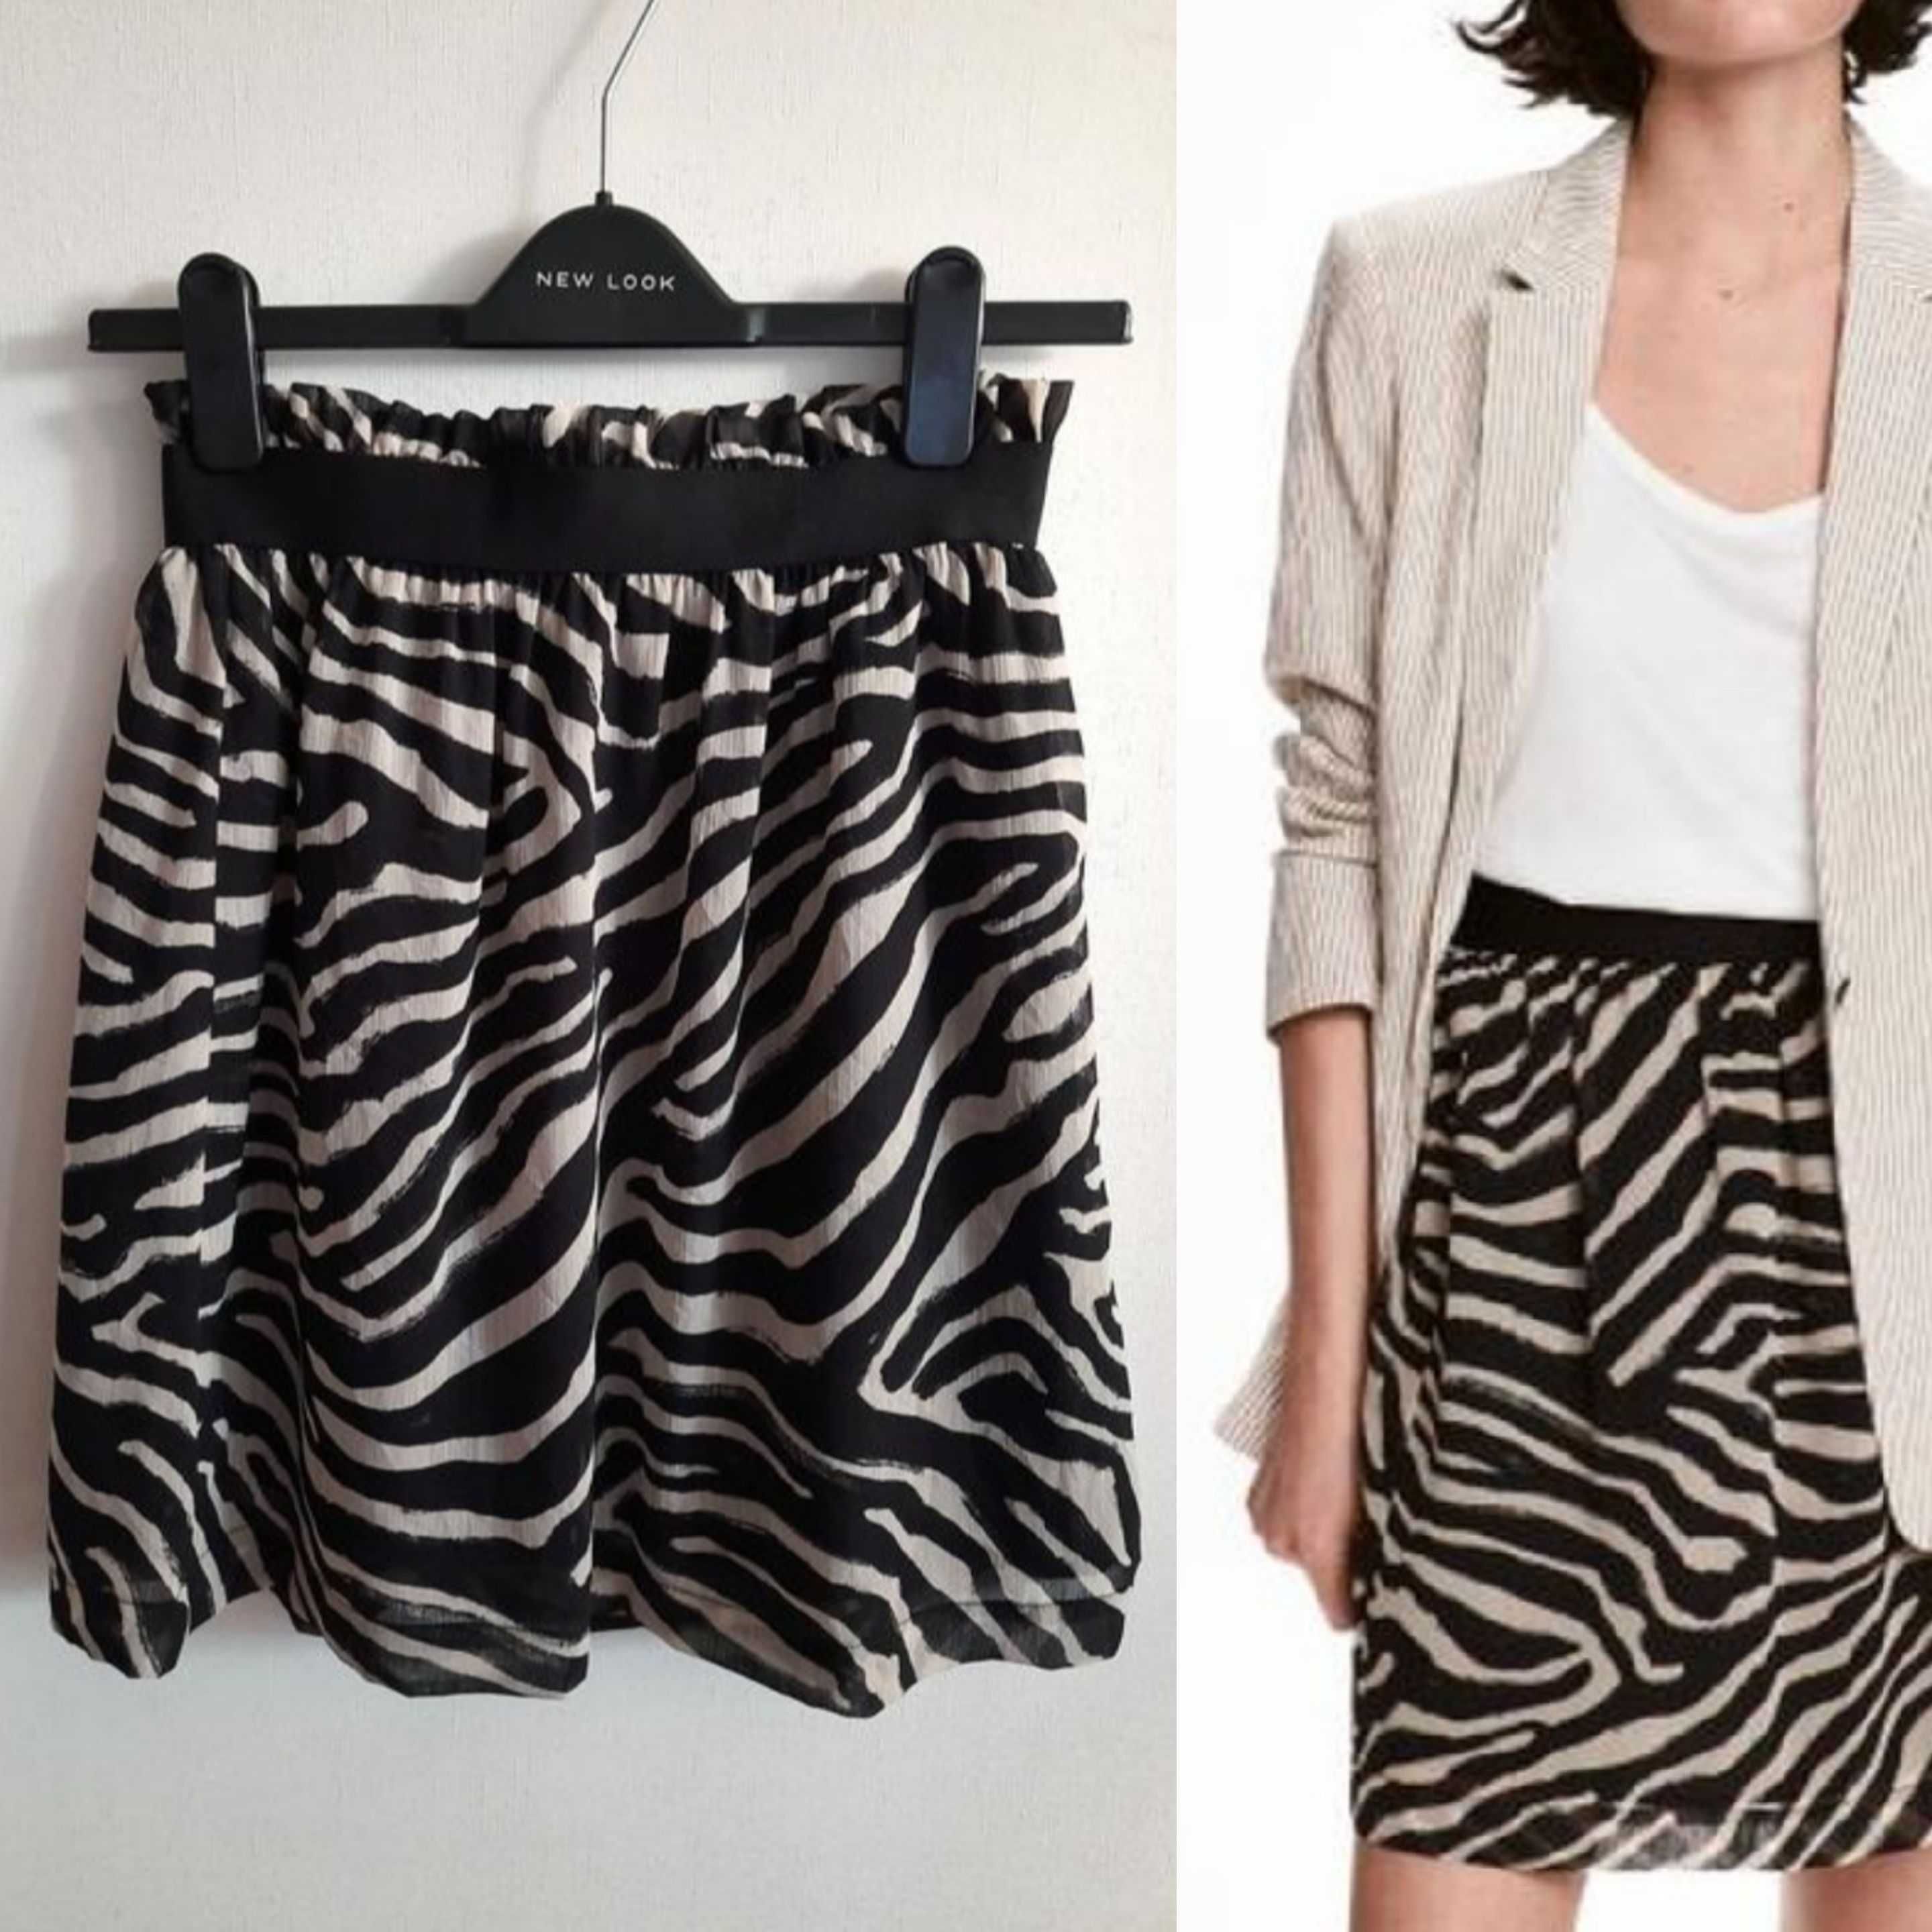 Фирменная юбка с принтом зебра